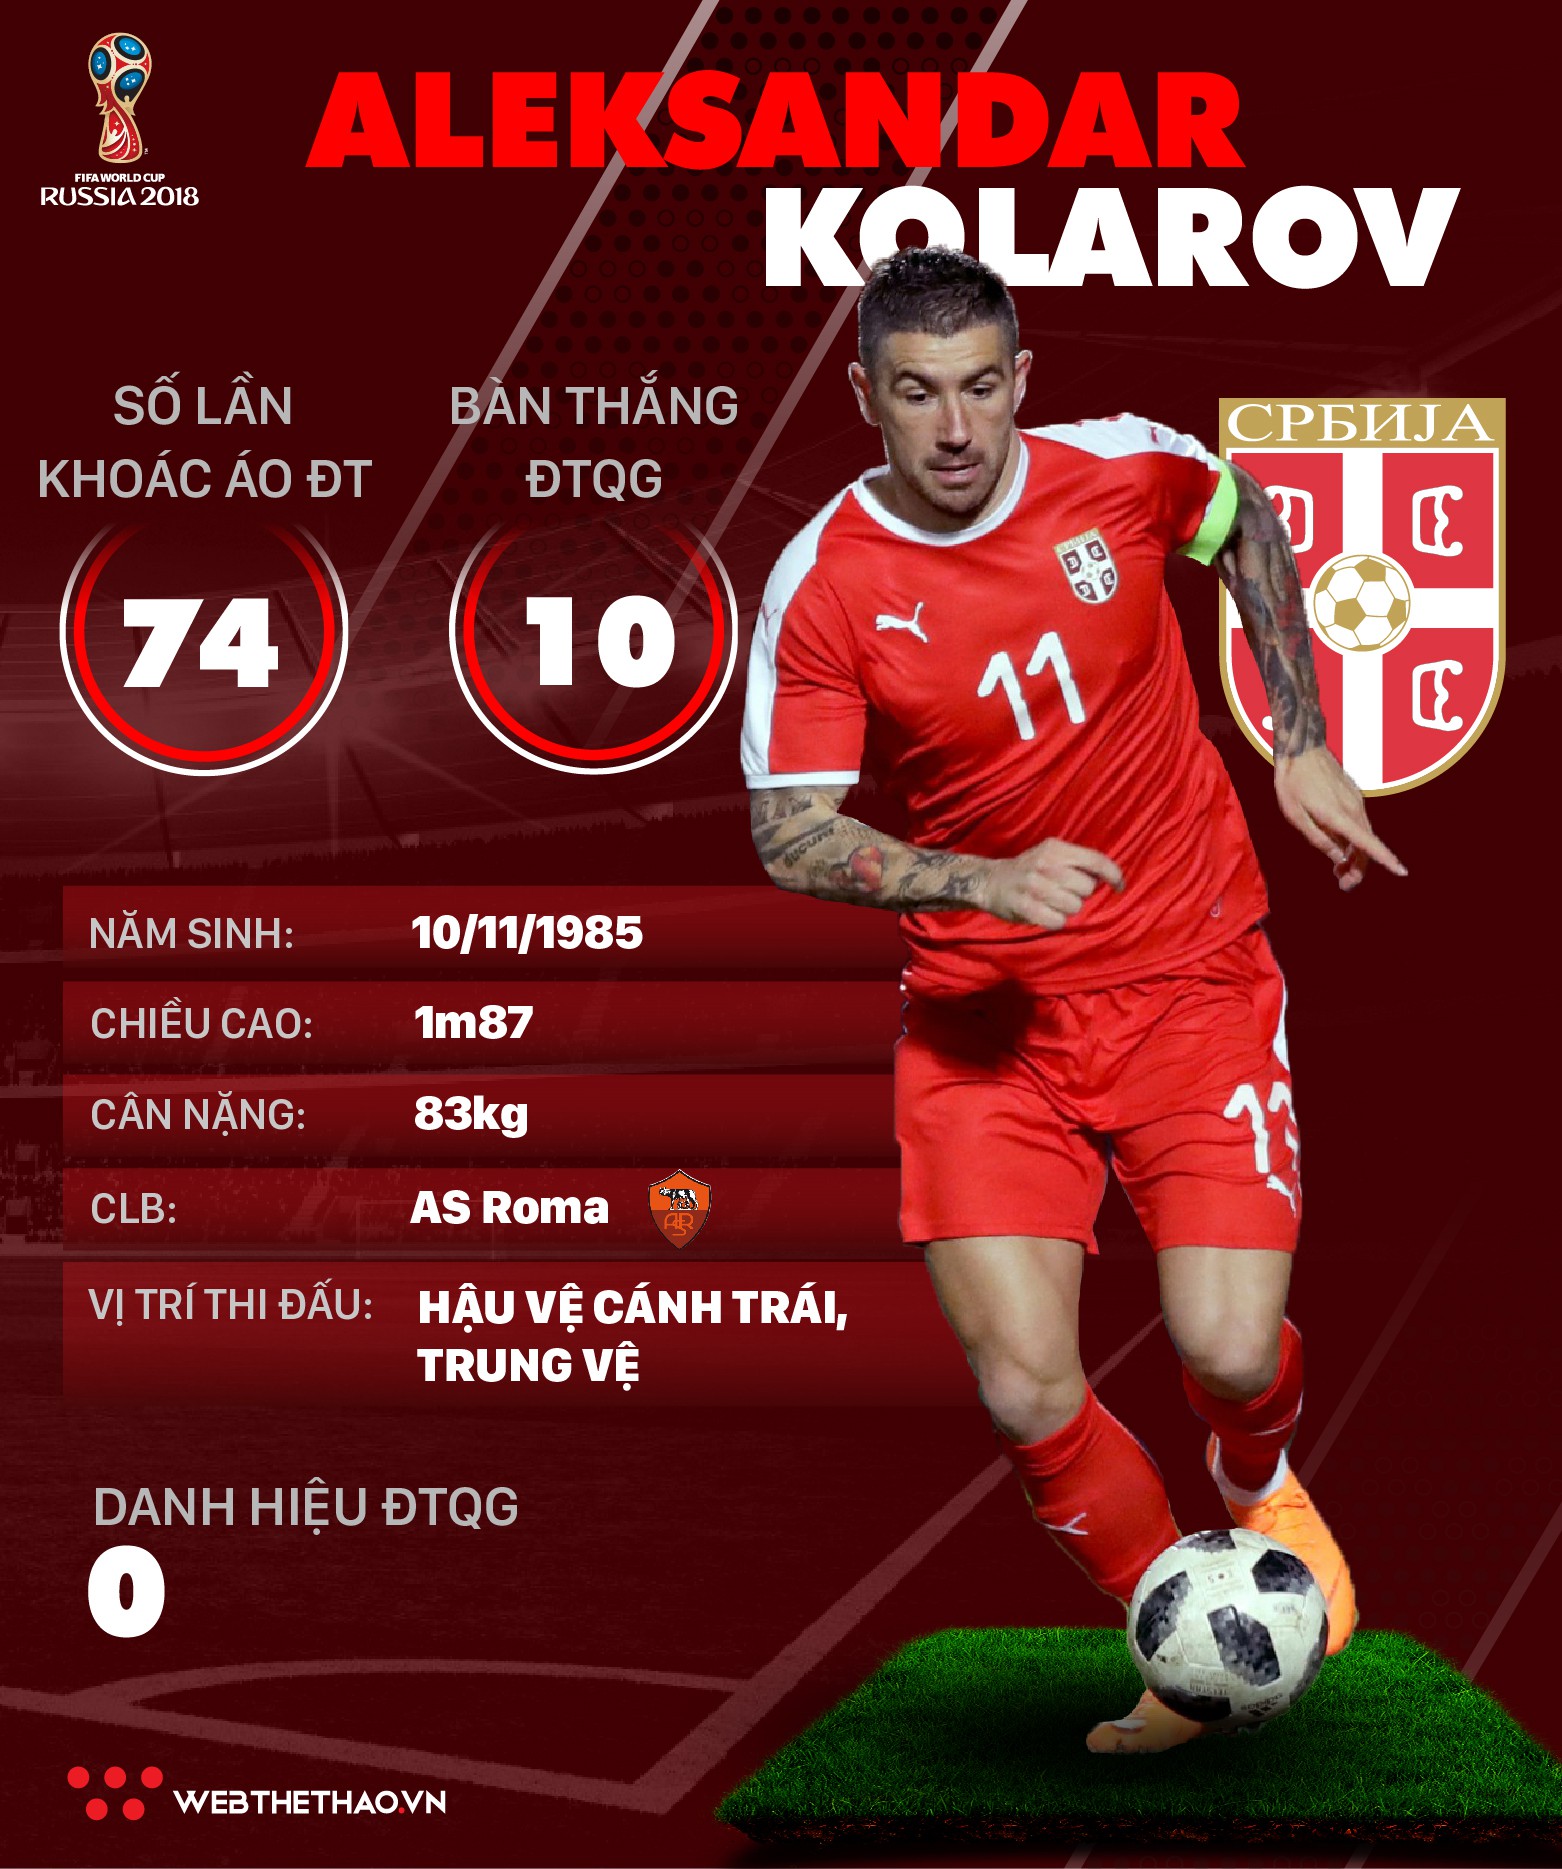 Thông tin cầu thủ Aleksandar Kolarov của ĐT Serbia dự World Cup 2018 - Ảnh 1.